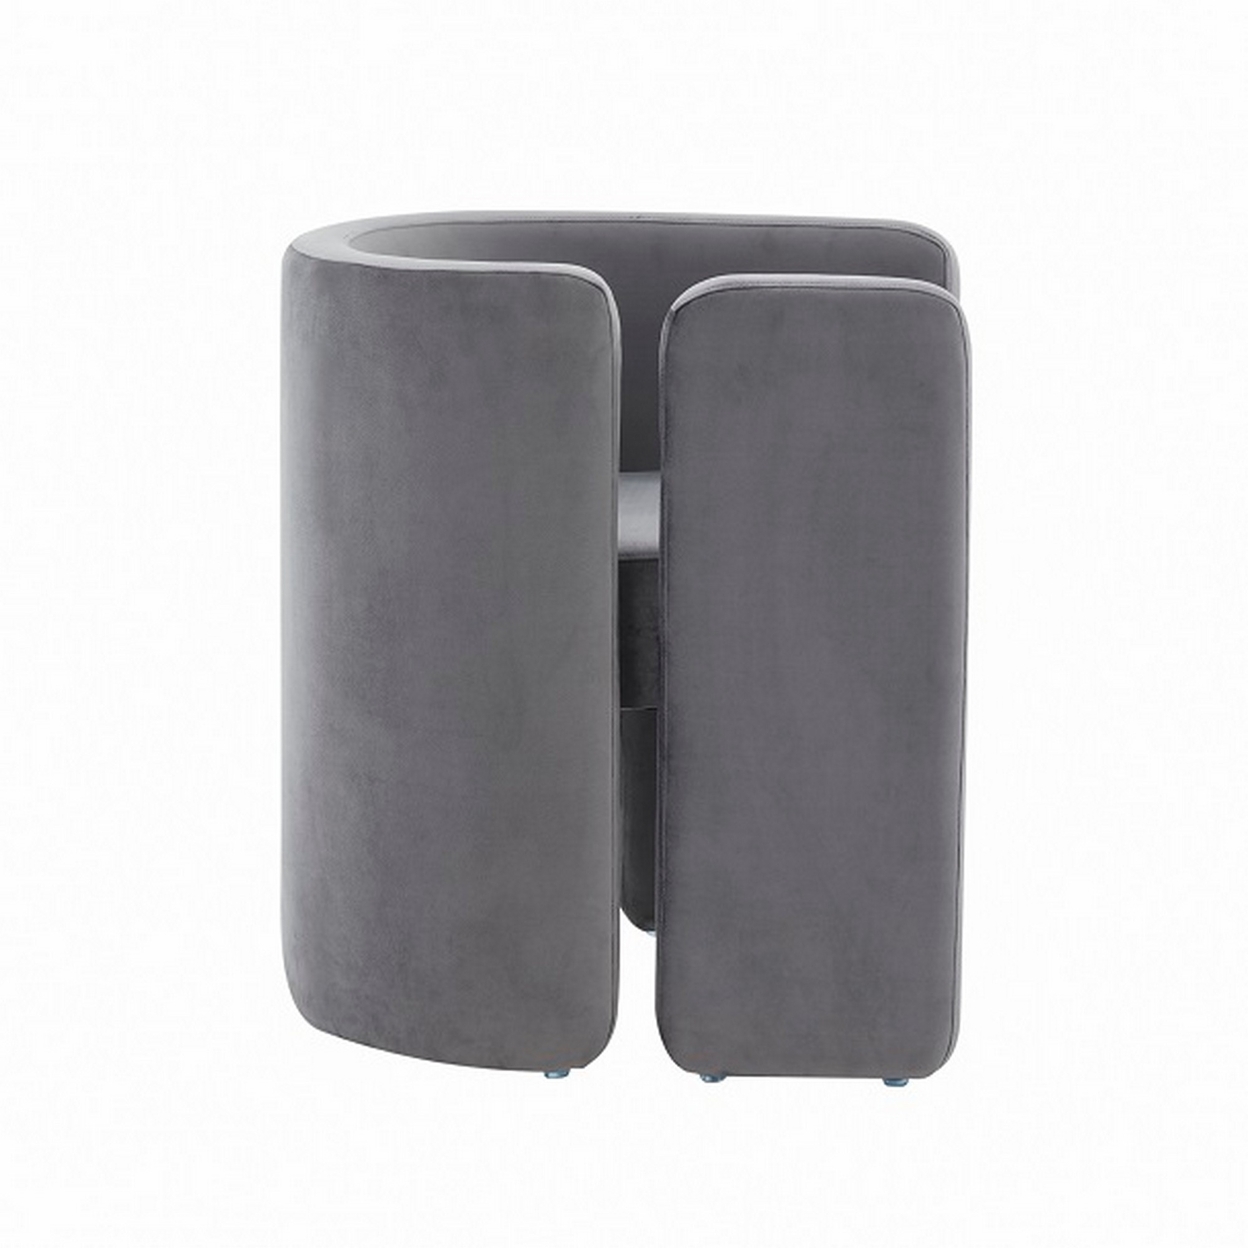 Cid 24 Inch Accent Chair, Soft Gray Velvet, Curved Backrest, Panel Base- Saltoro Sherpi